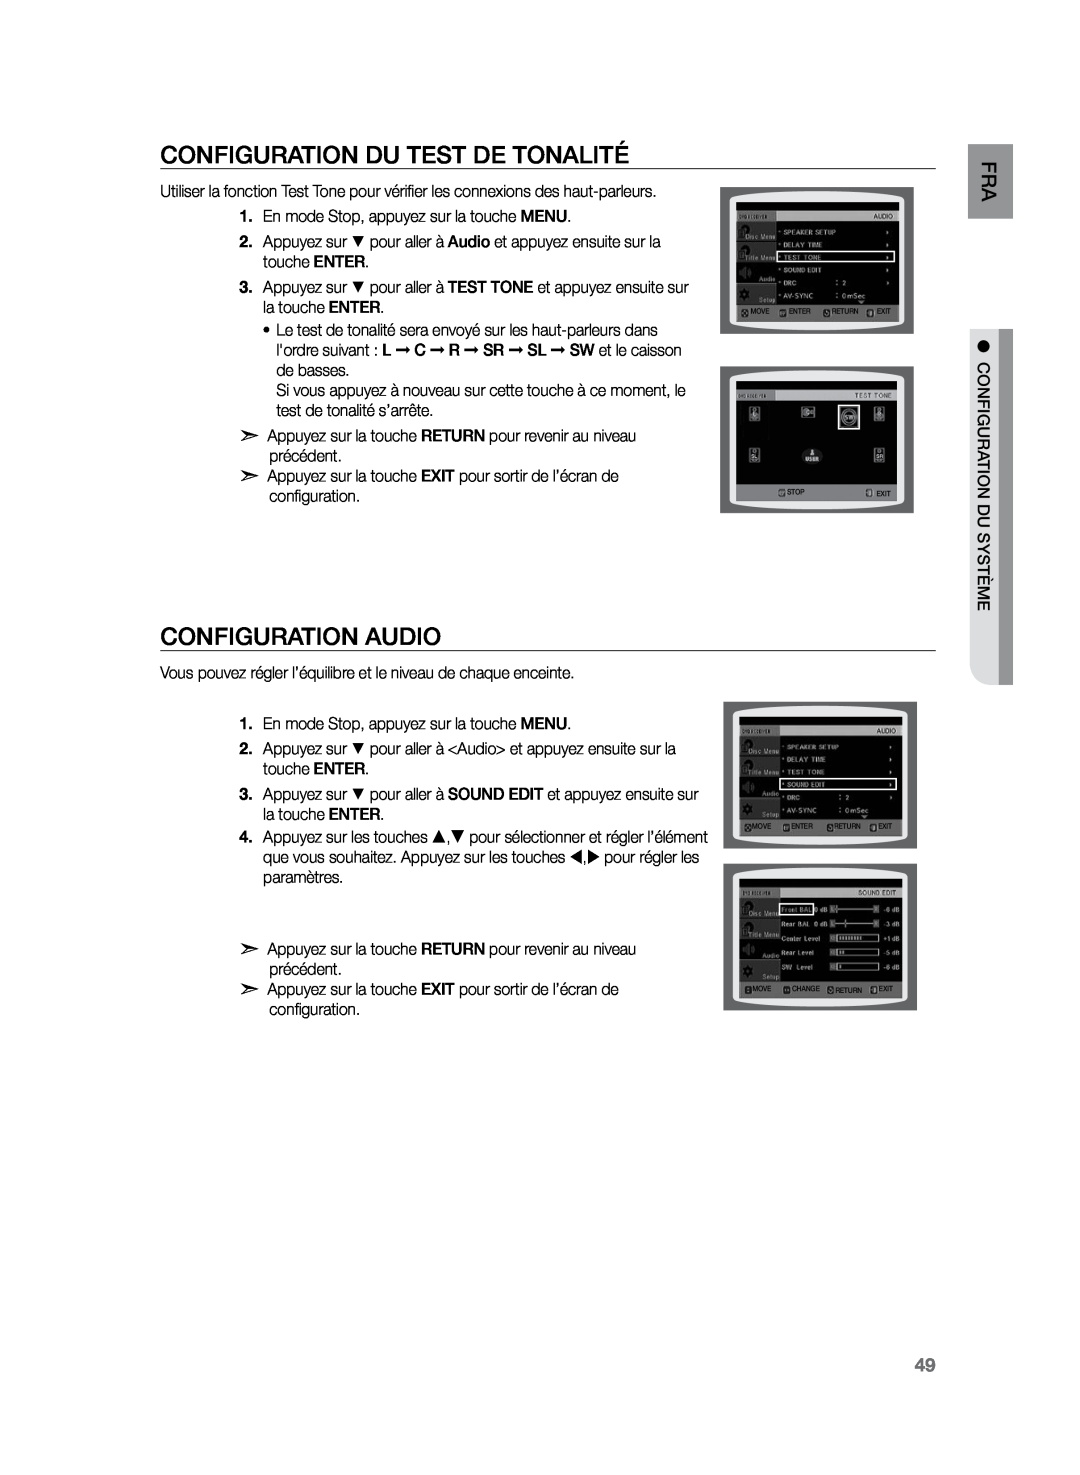 Samsung HT-TZ225R/XEF, HT-Z220R/XEF, HT-TZ222R/XEF manual Configuration du test de tonalité, Configuration audio, duFRA 